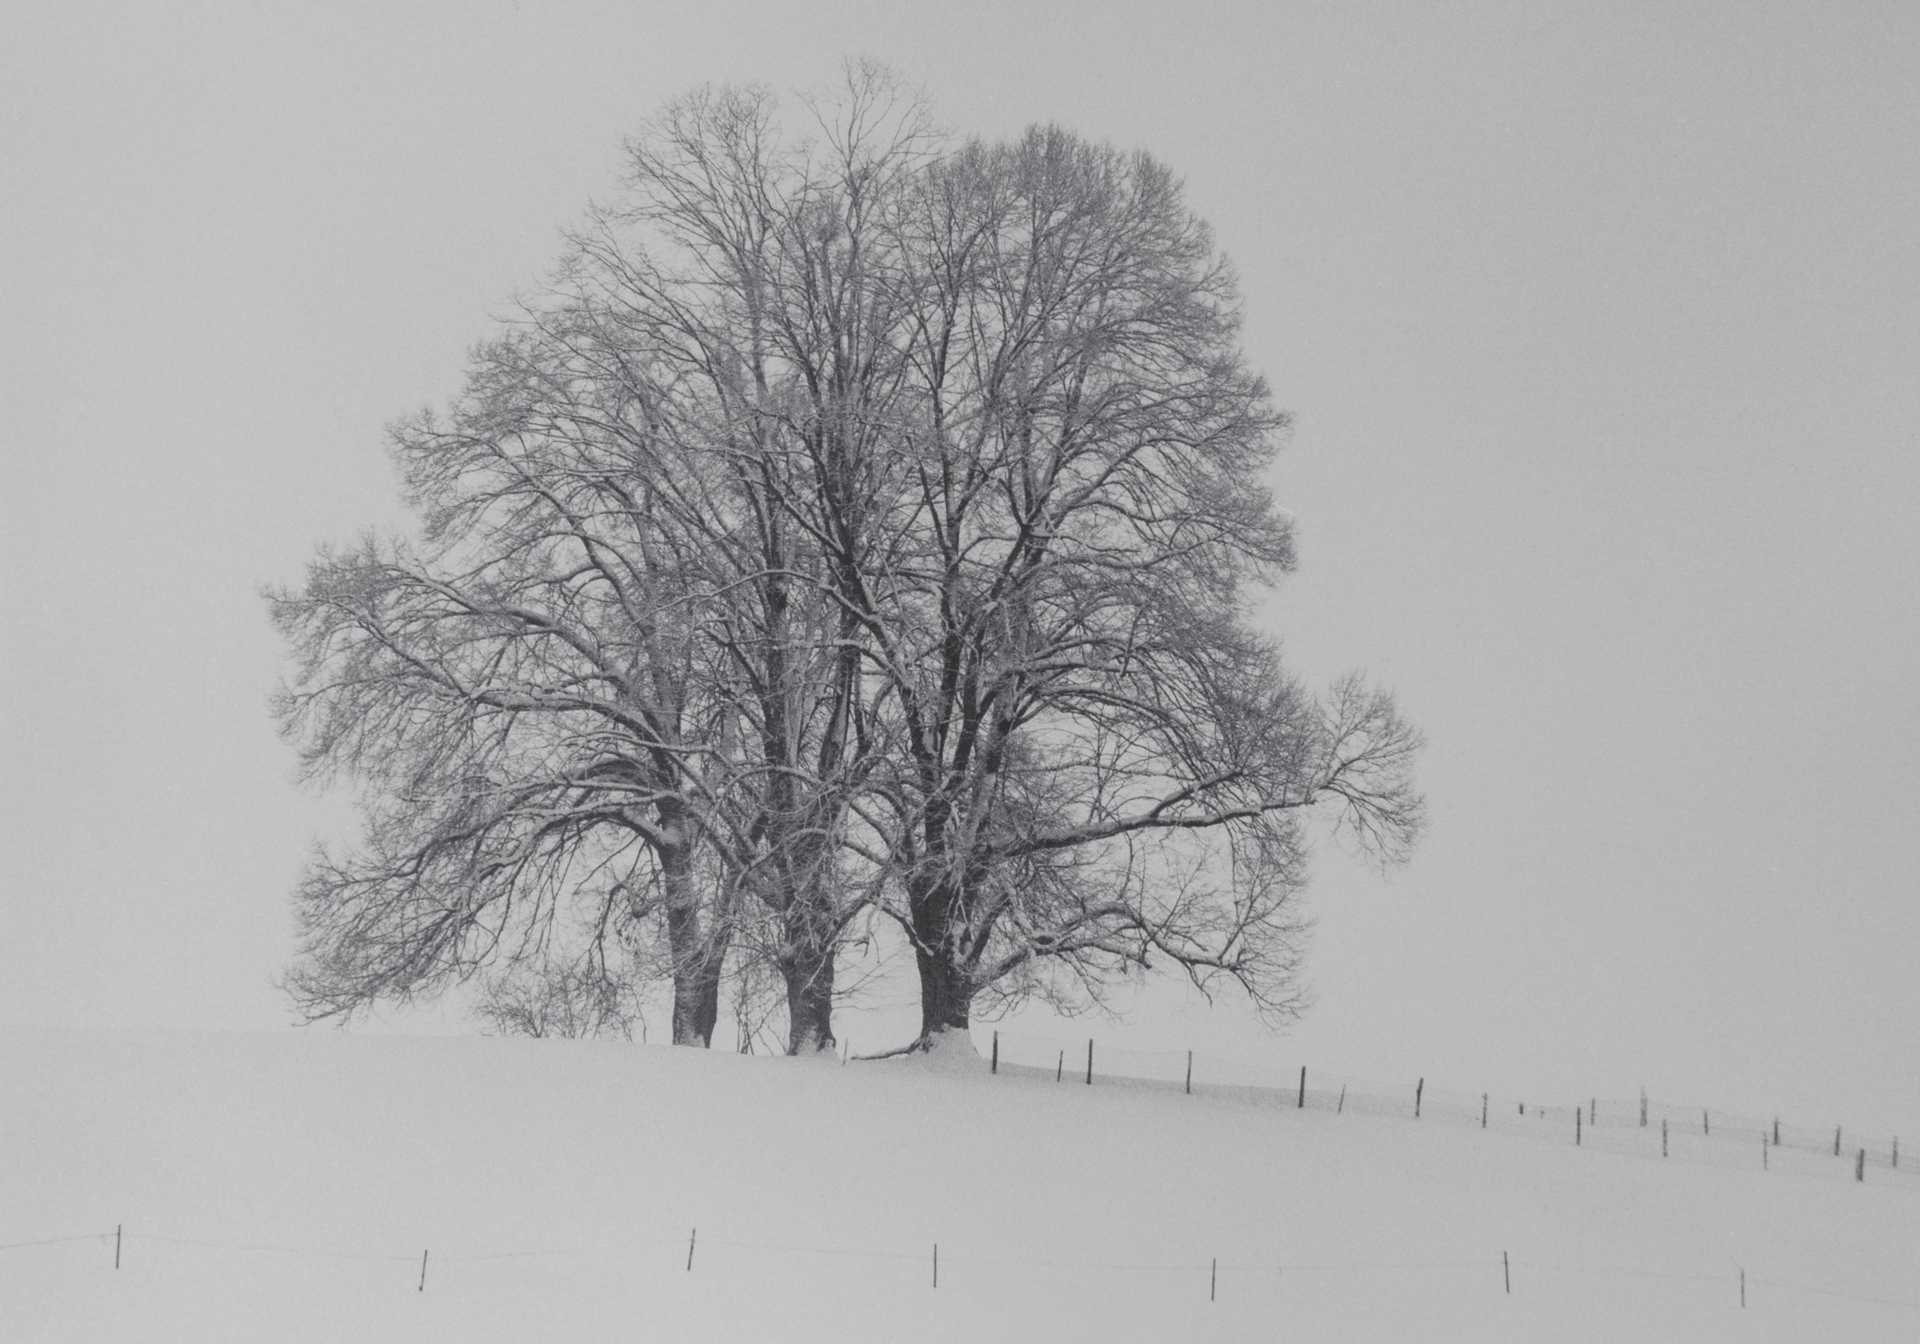 Schwarzweiß-Fotografie eines eingeschneiten Baumes in einer weißen Winterlandschaft